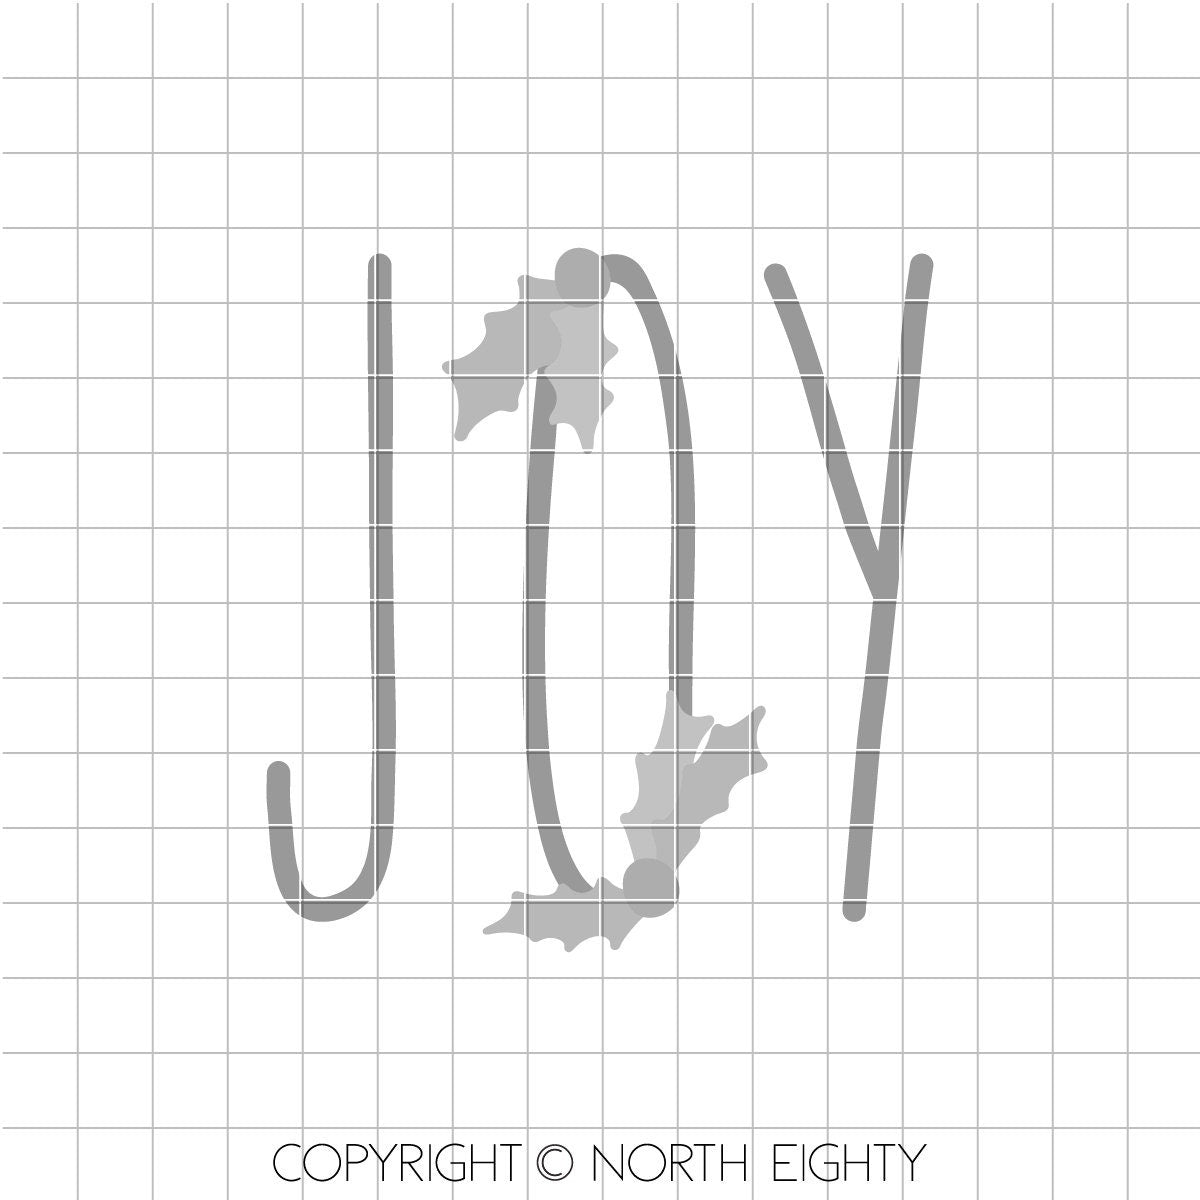 Joy svg cutfile - Christmas svg - Farmhouse Christmas svg - Joy dxf - Joy Cut File - Joy Vector Art - Farmhouse Christmas dxf -Christmas Cut